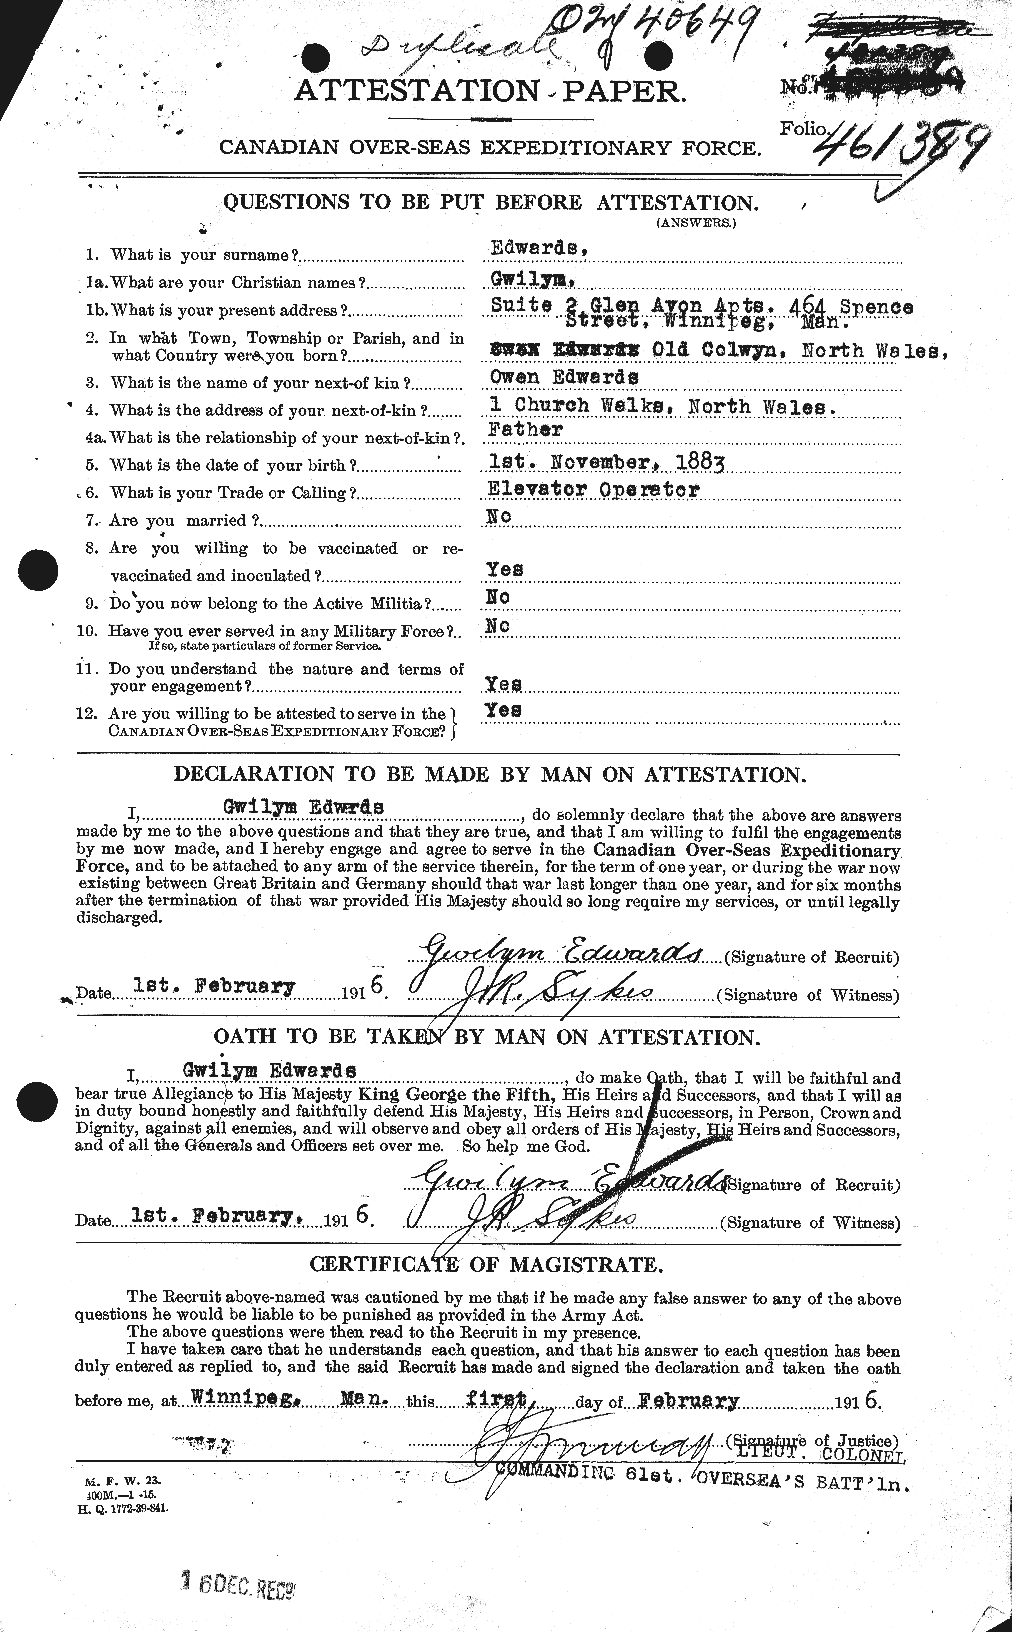 Dossiers du Personnel de la Première Guerre mondiale - CEC 309710a